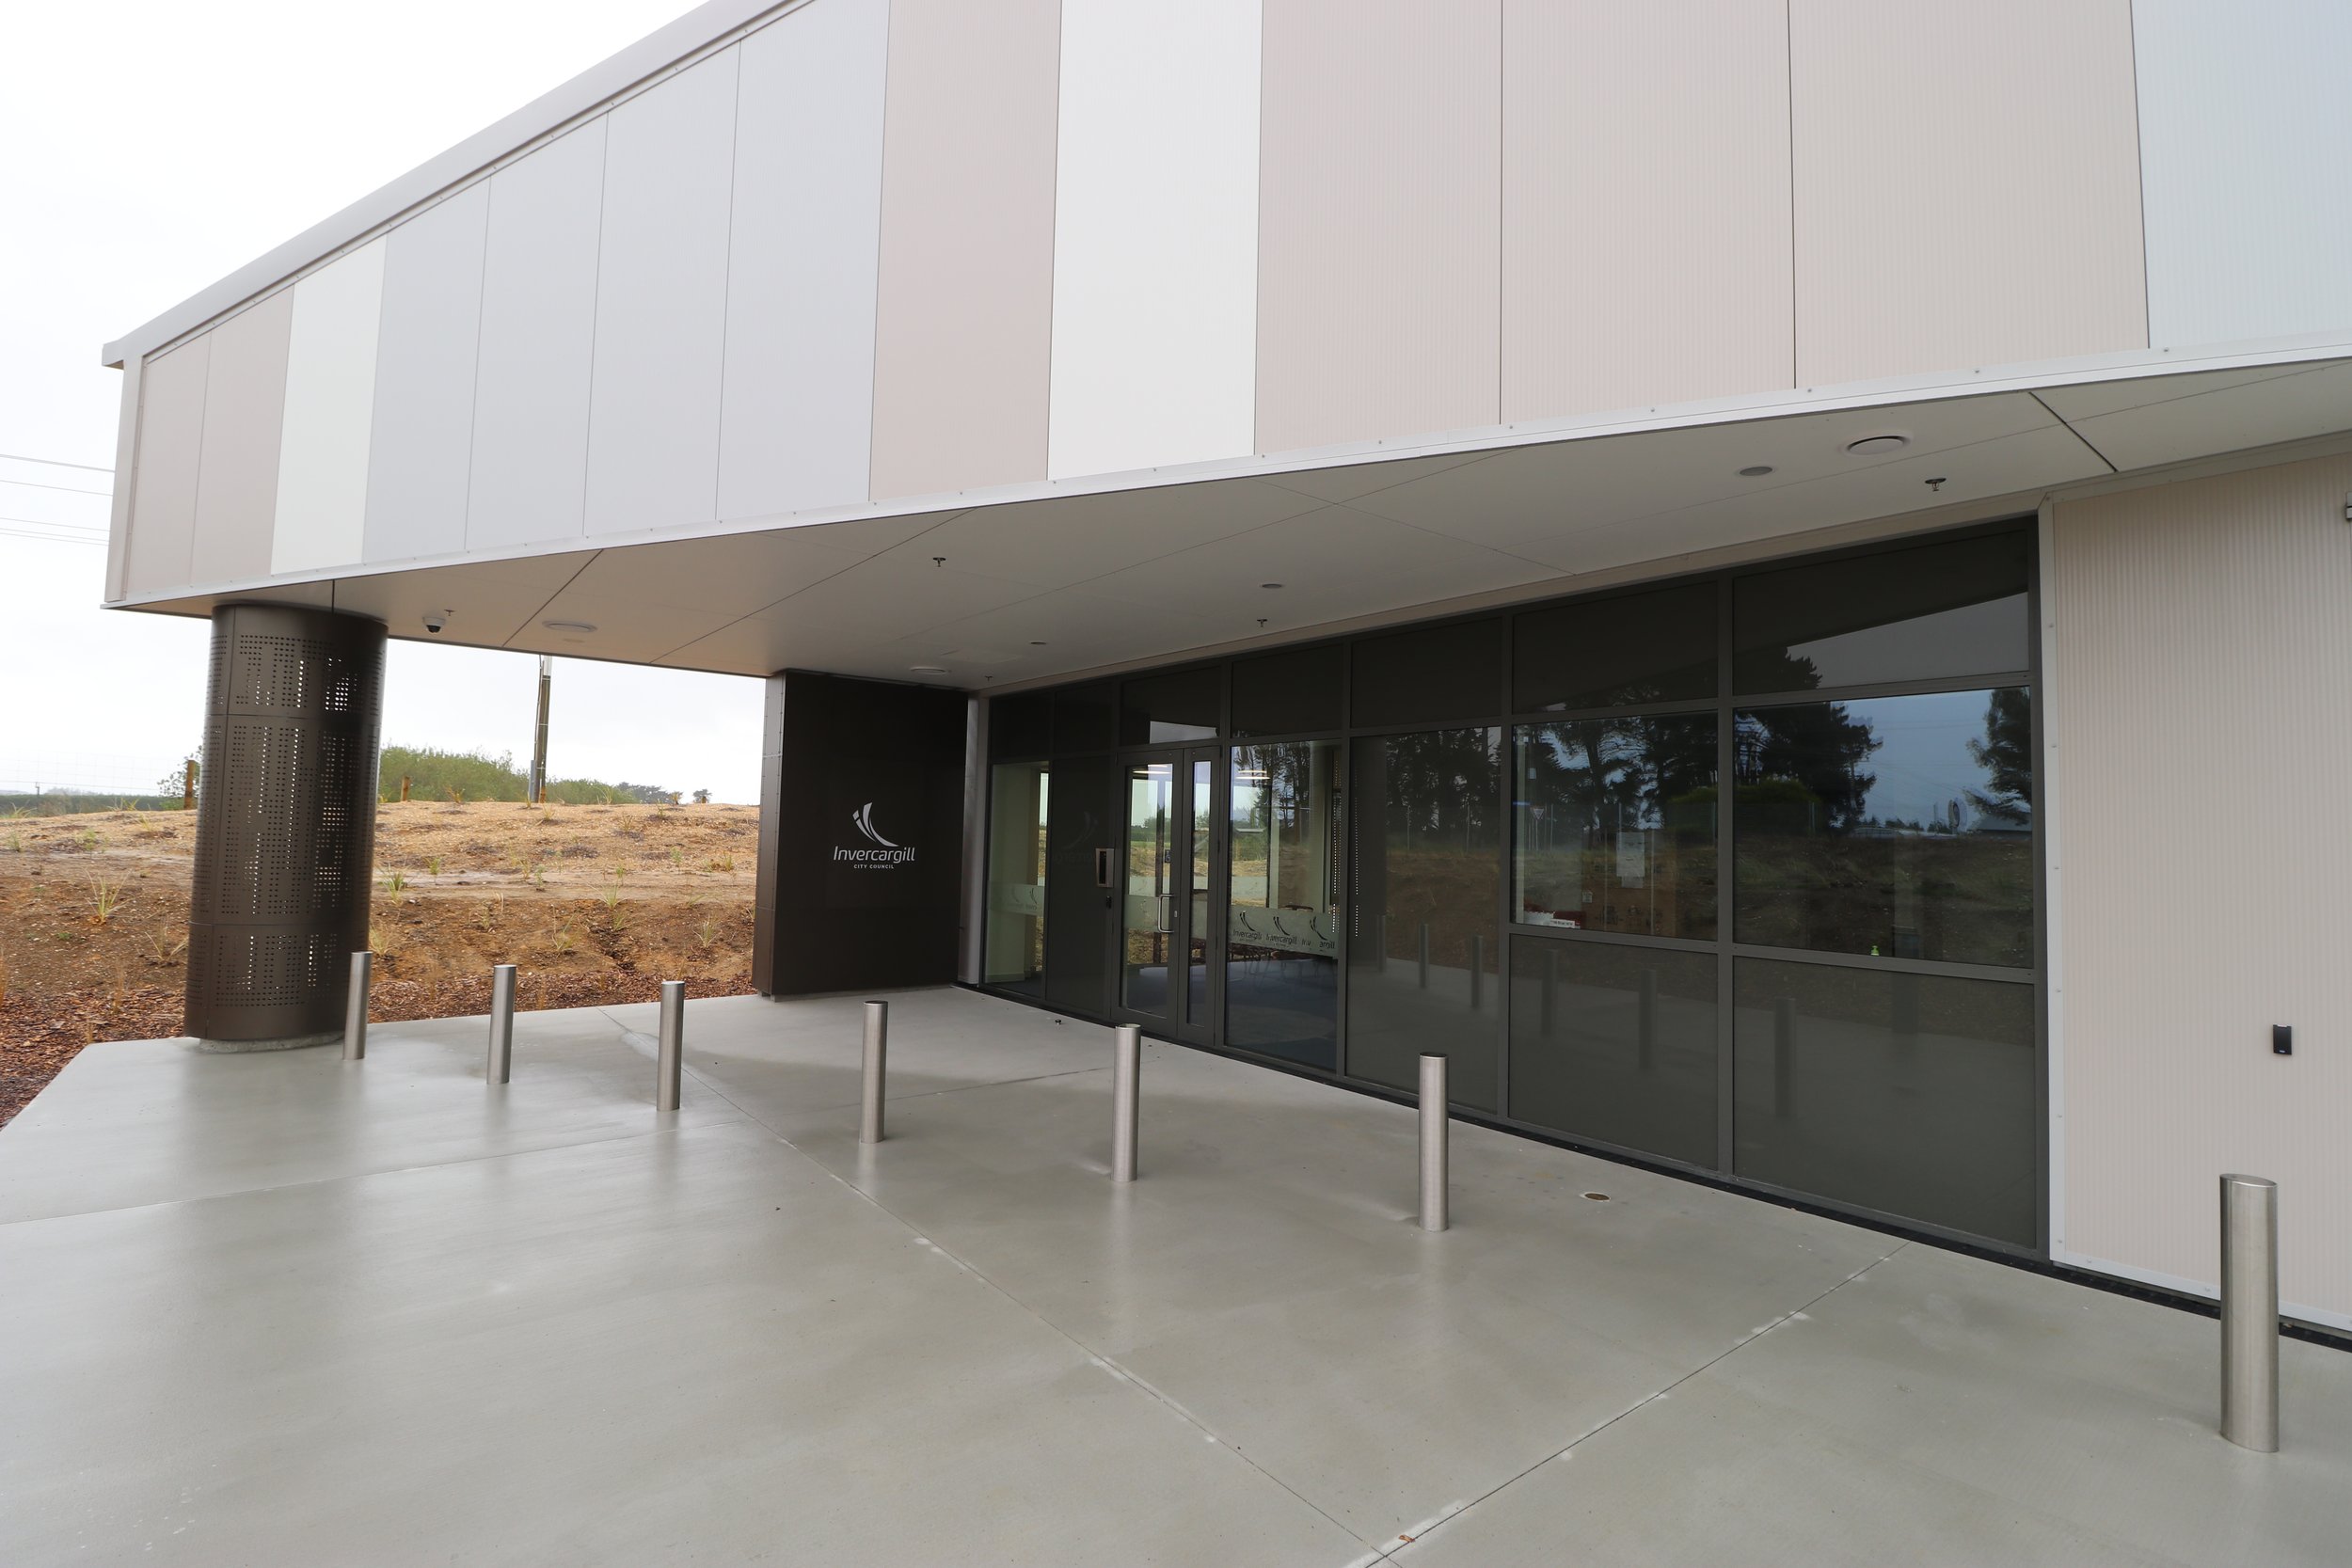  The facility was gifted the name Te Pātaka Taoka Southern Regional Collections Facility by Waihōpai Rūnaka 